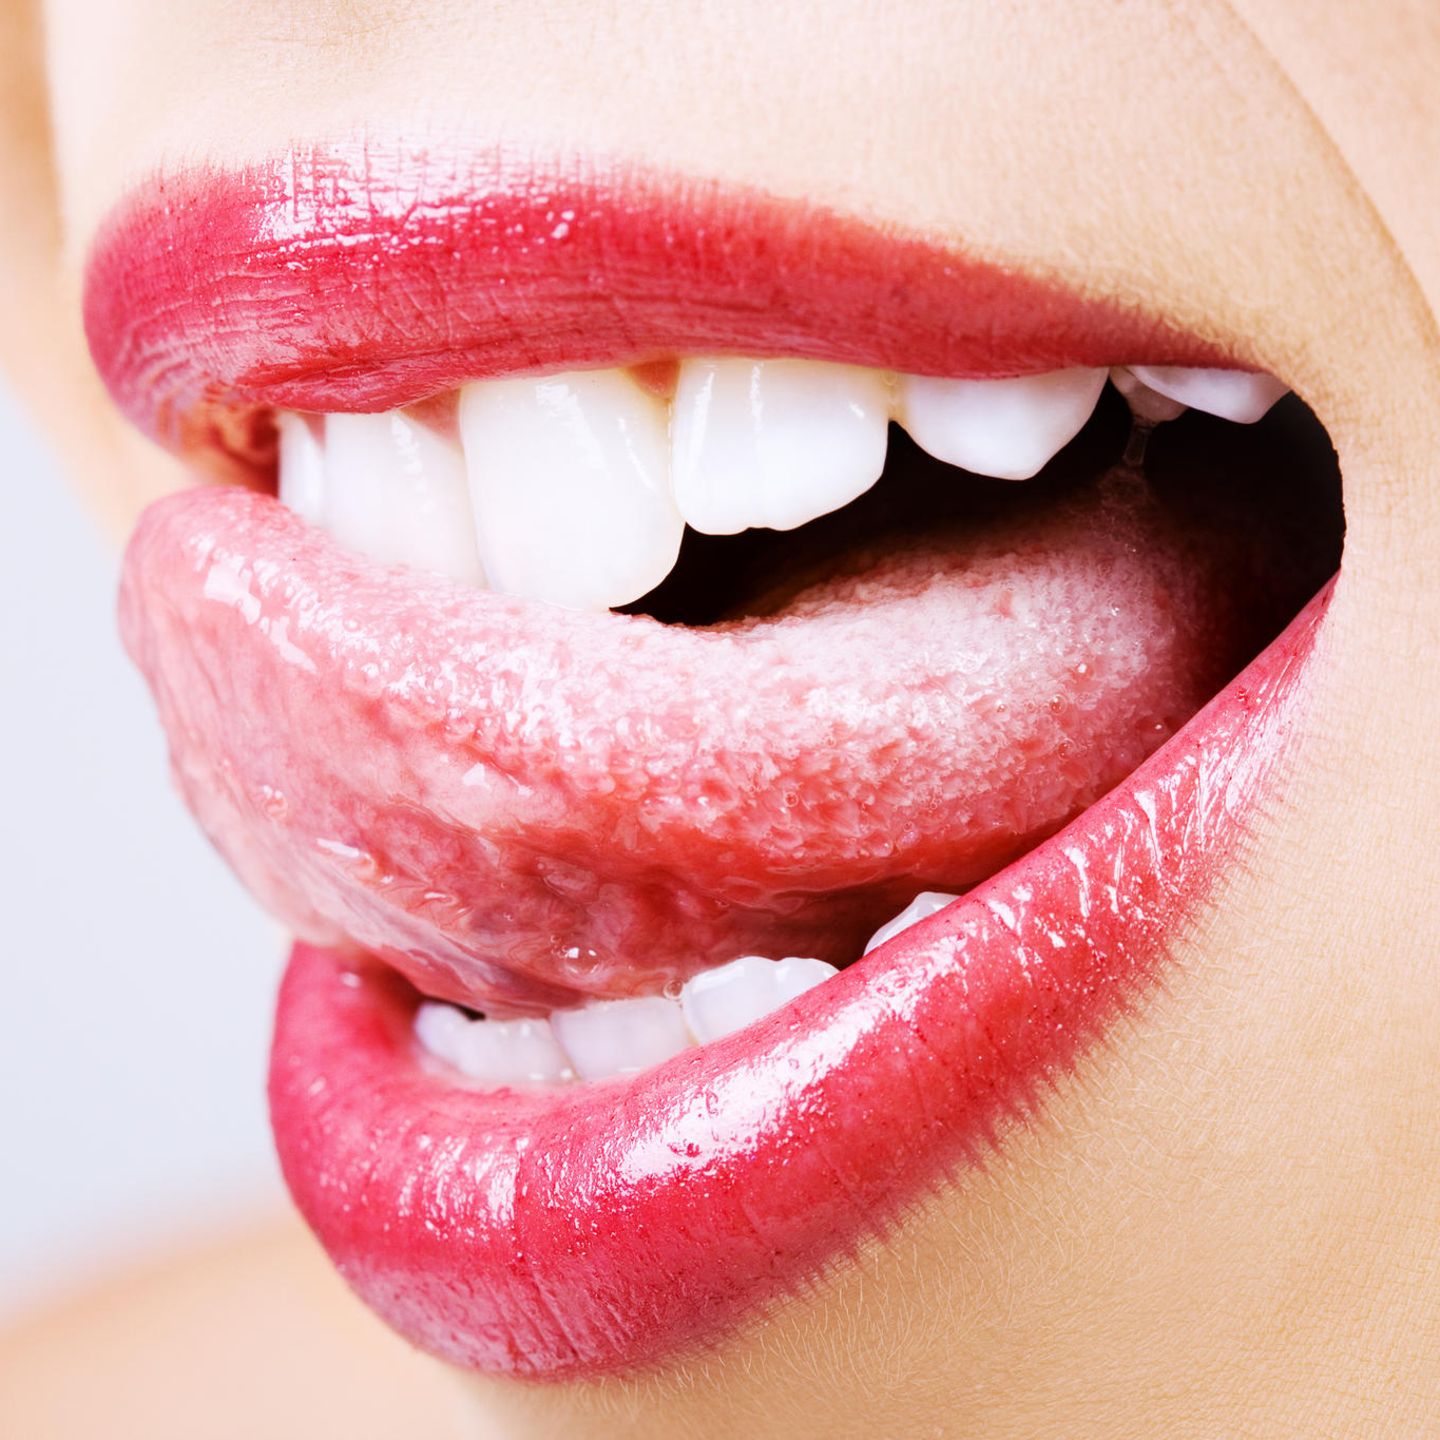 Zunge eiterbläschen Pusteln